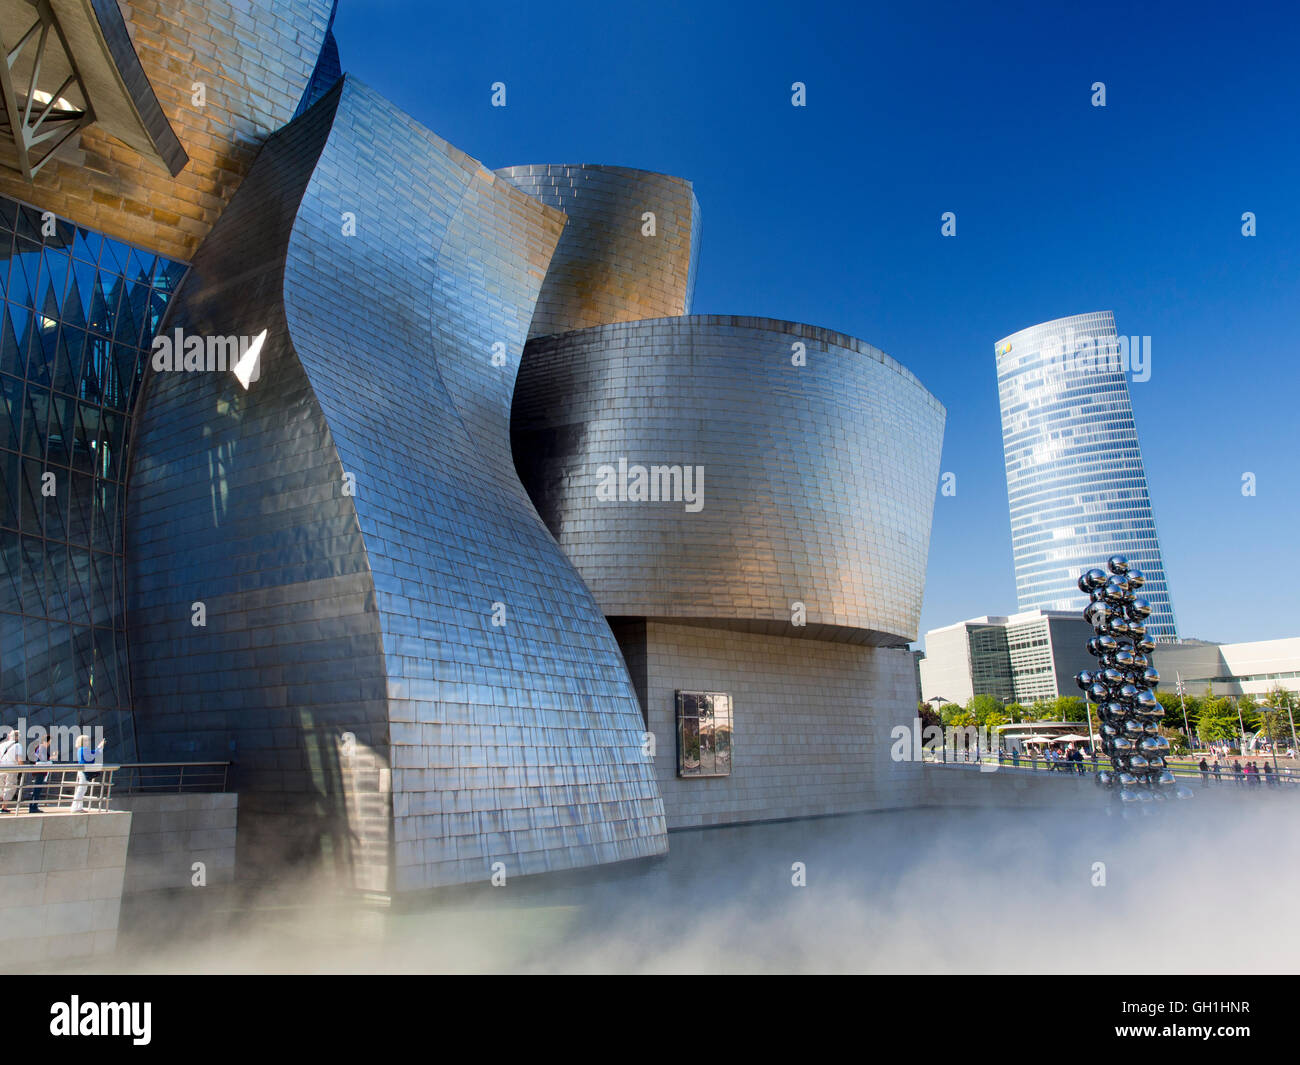 The iconic Guggenheim Museum in Bilbao, Spain 7 Stock Photo